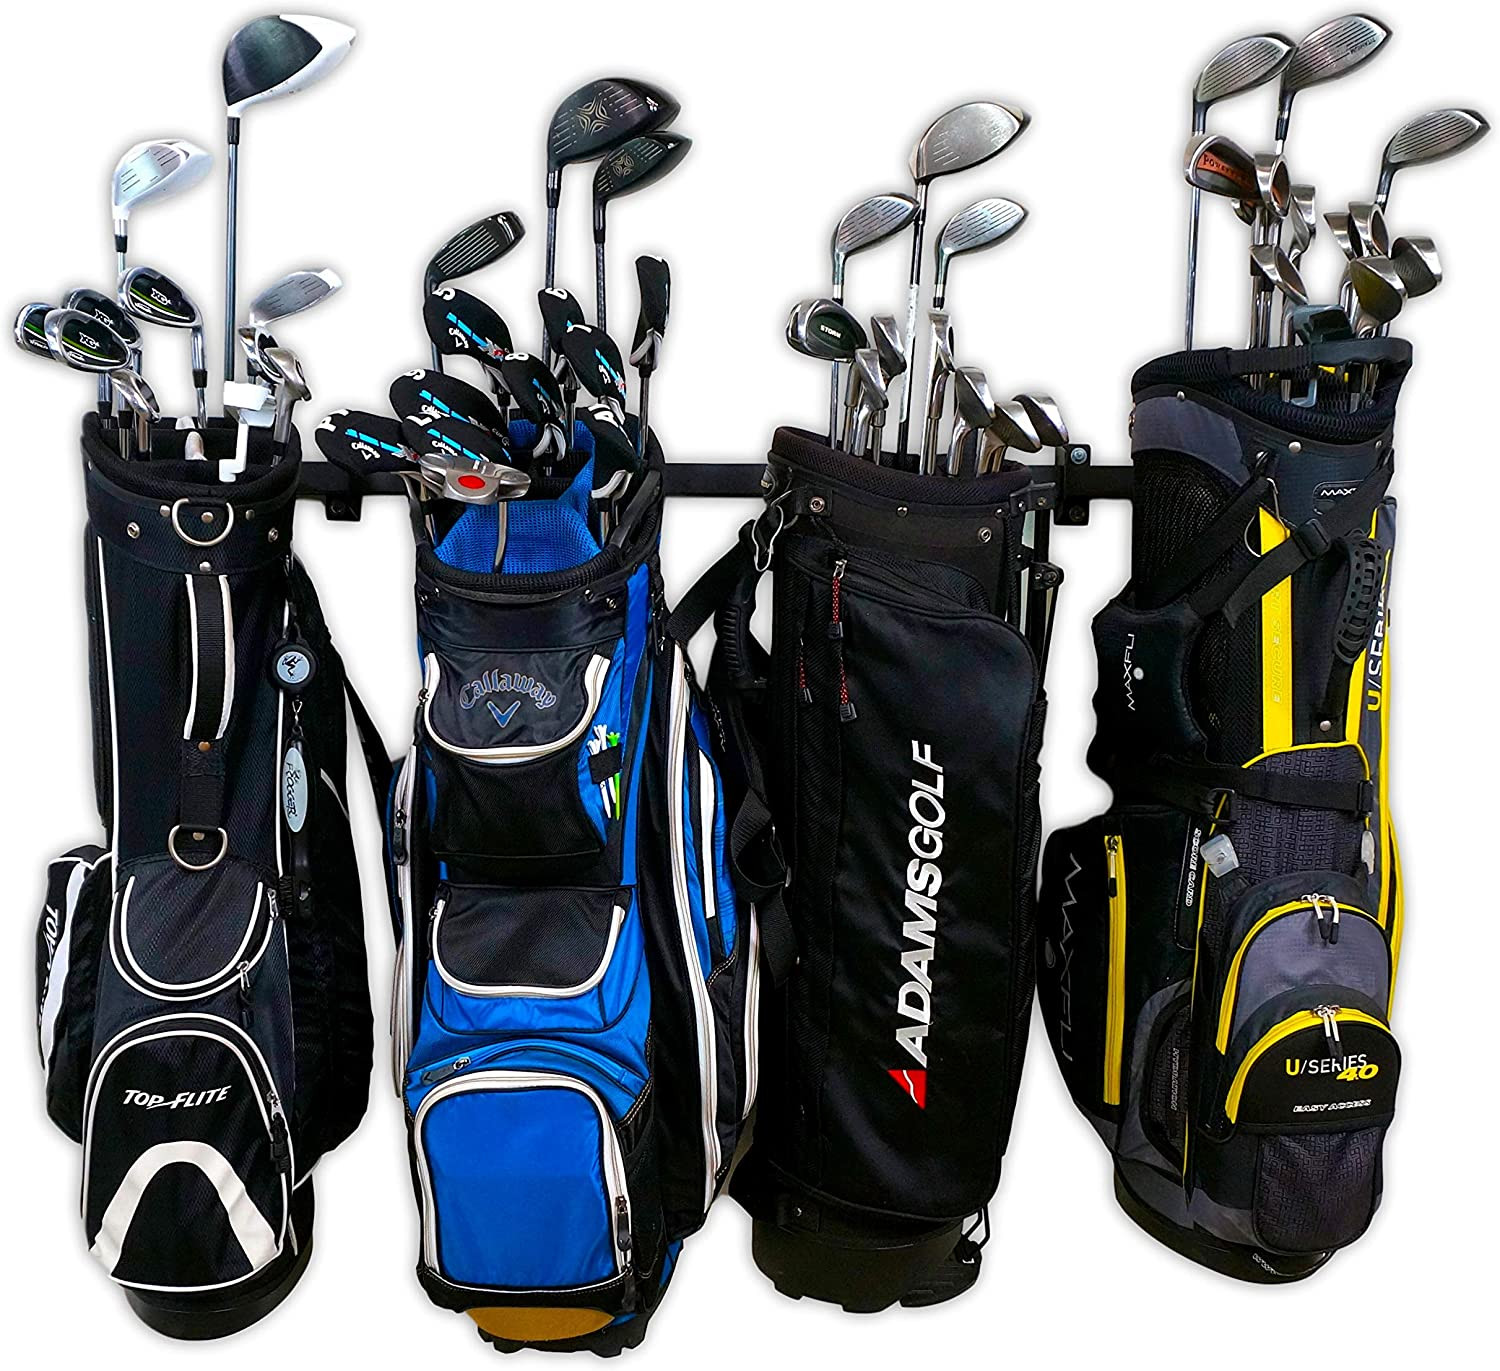 Golf Bag Organizer For Garage
 StoreYourBoard Golf Club Organizer Garage Storage Rack